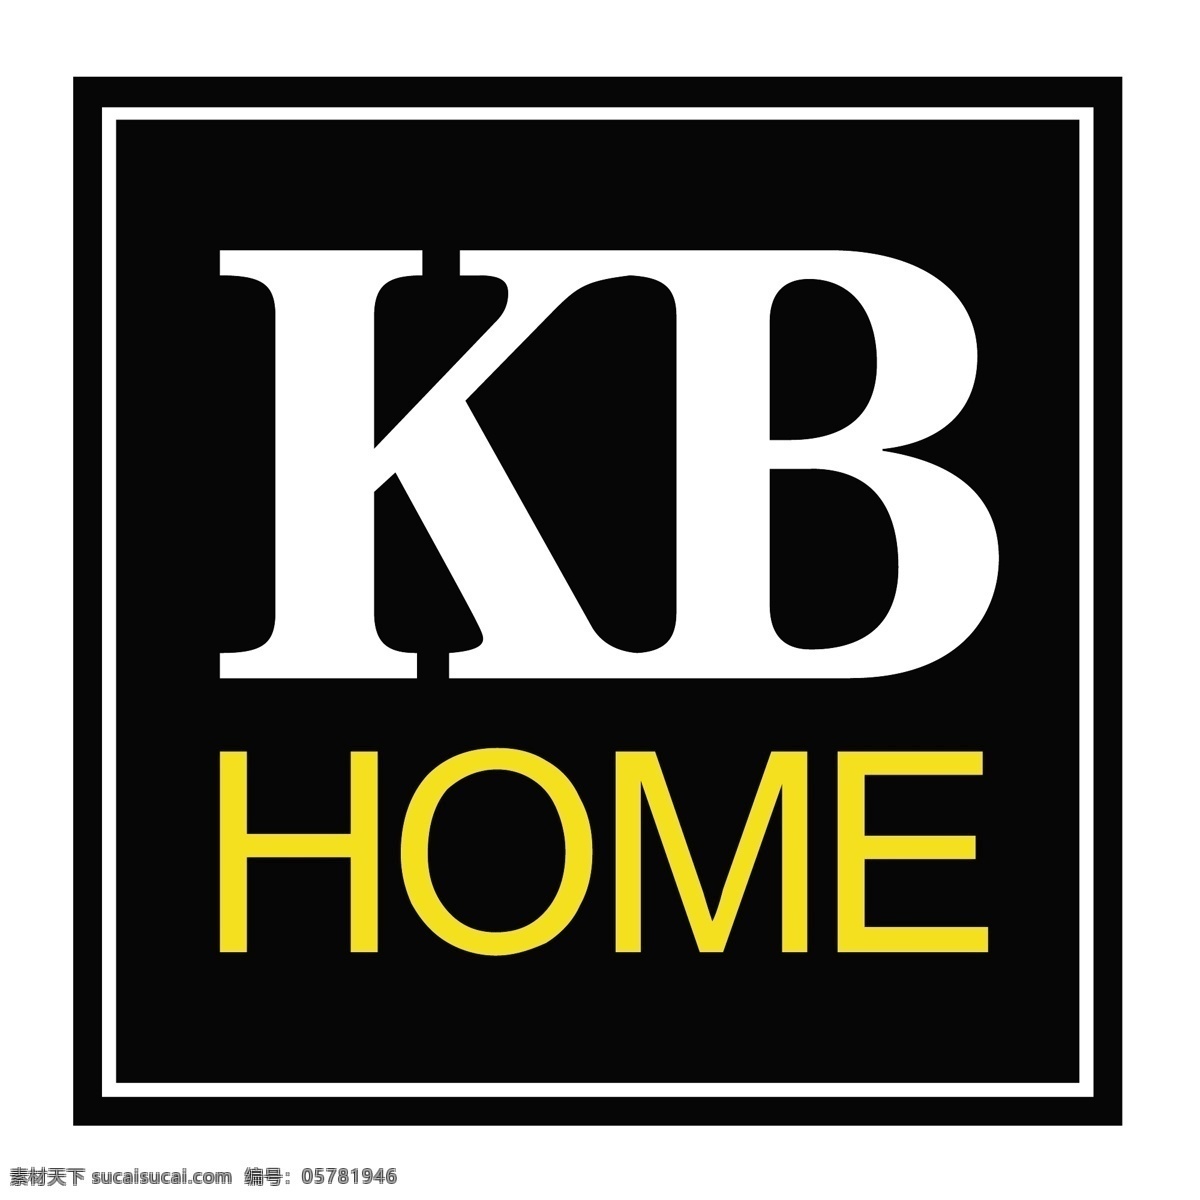 回家 家 矢量kb home kb 在家里 家里 免费 矢量 图像 矢量图 图形 家居设计 建筑家居